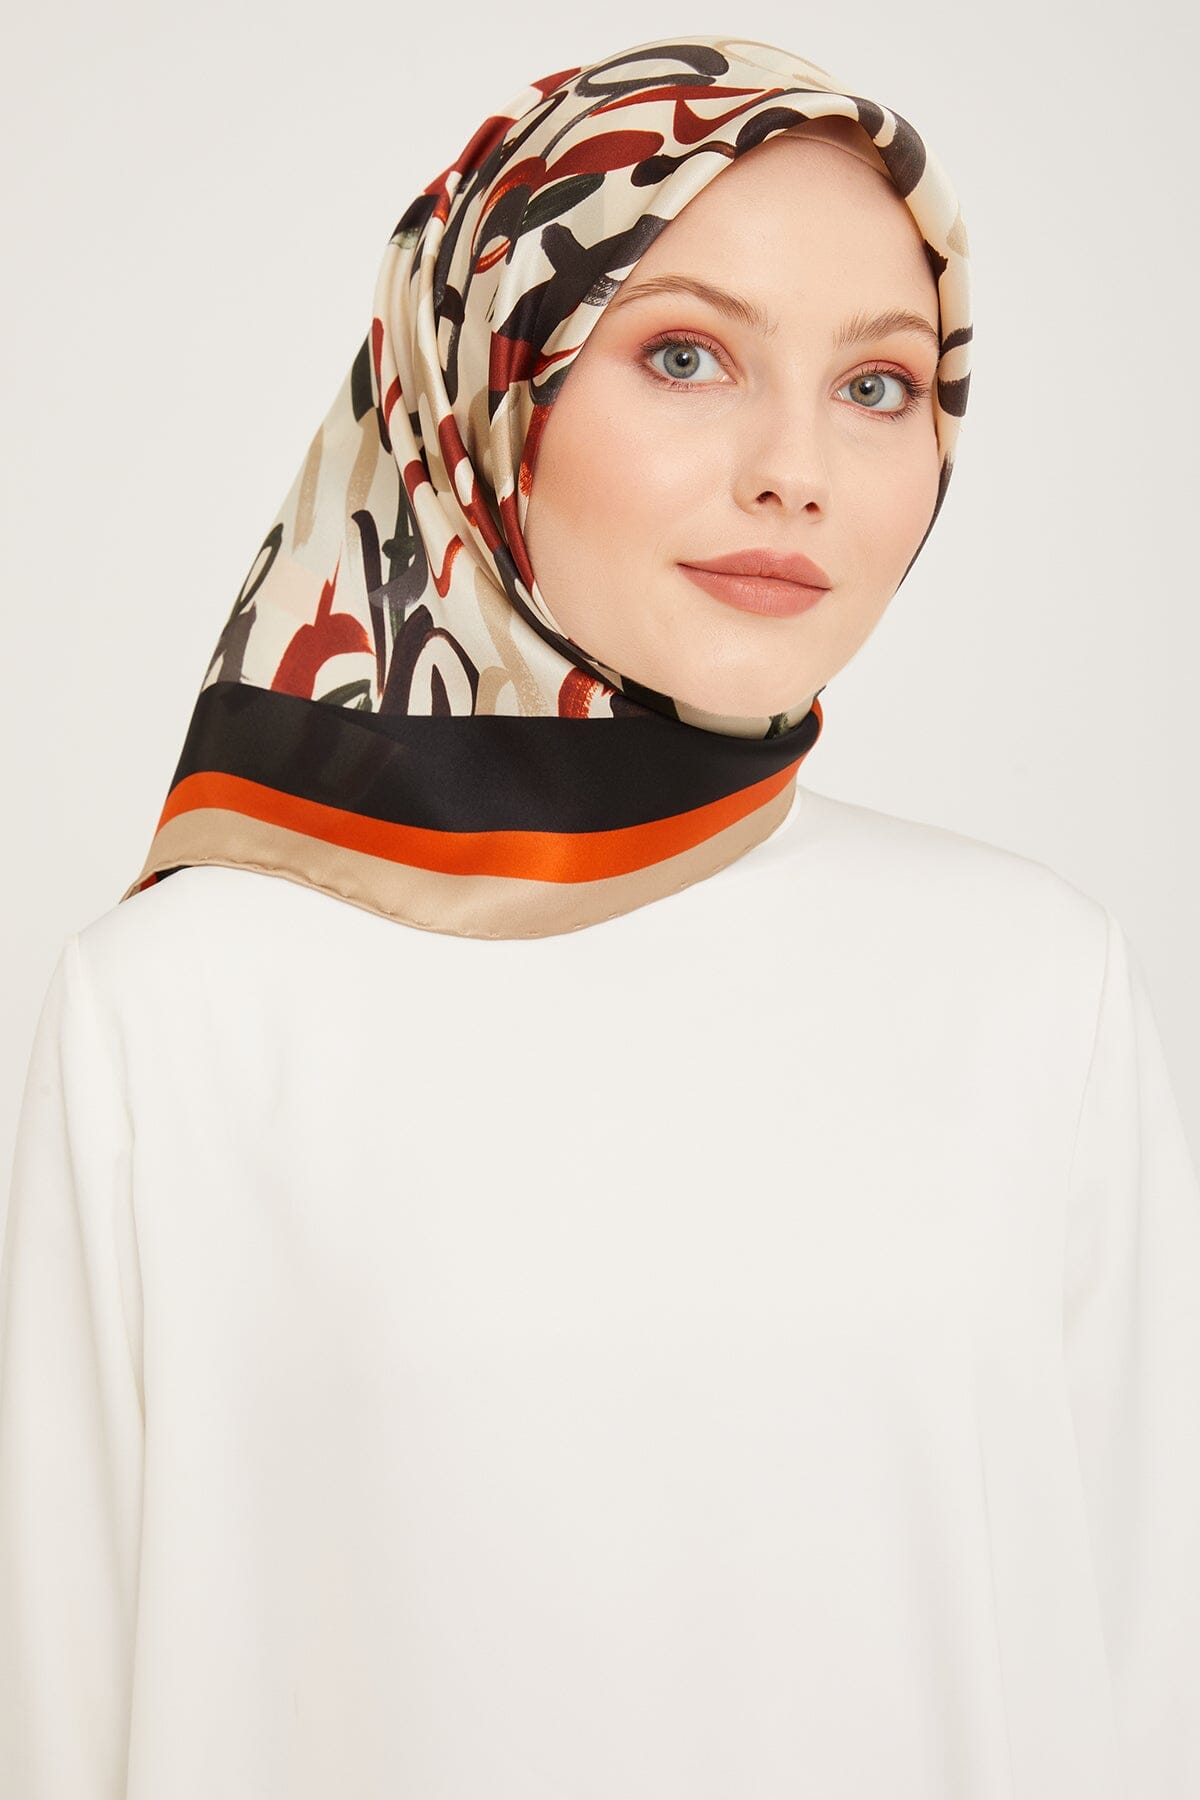 Armine Nudle Designer Silk Scarf #37 Silk Hijabs,Armine Armine 